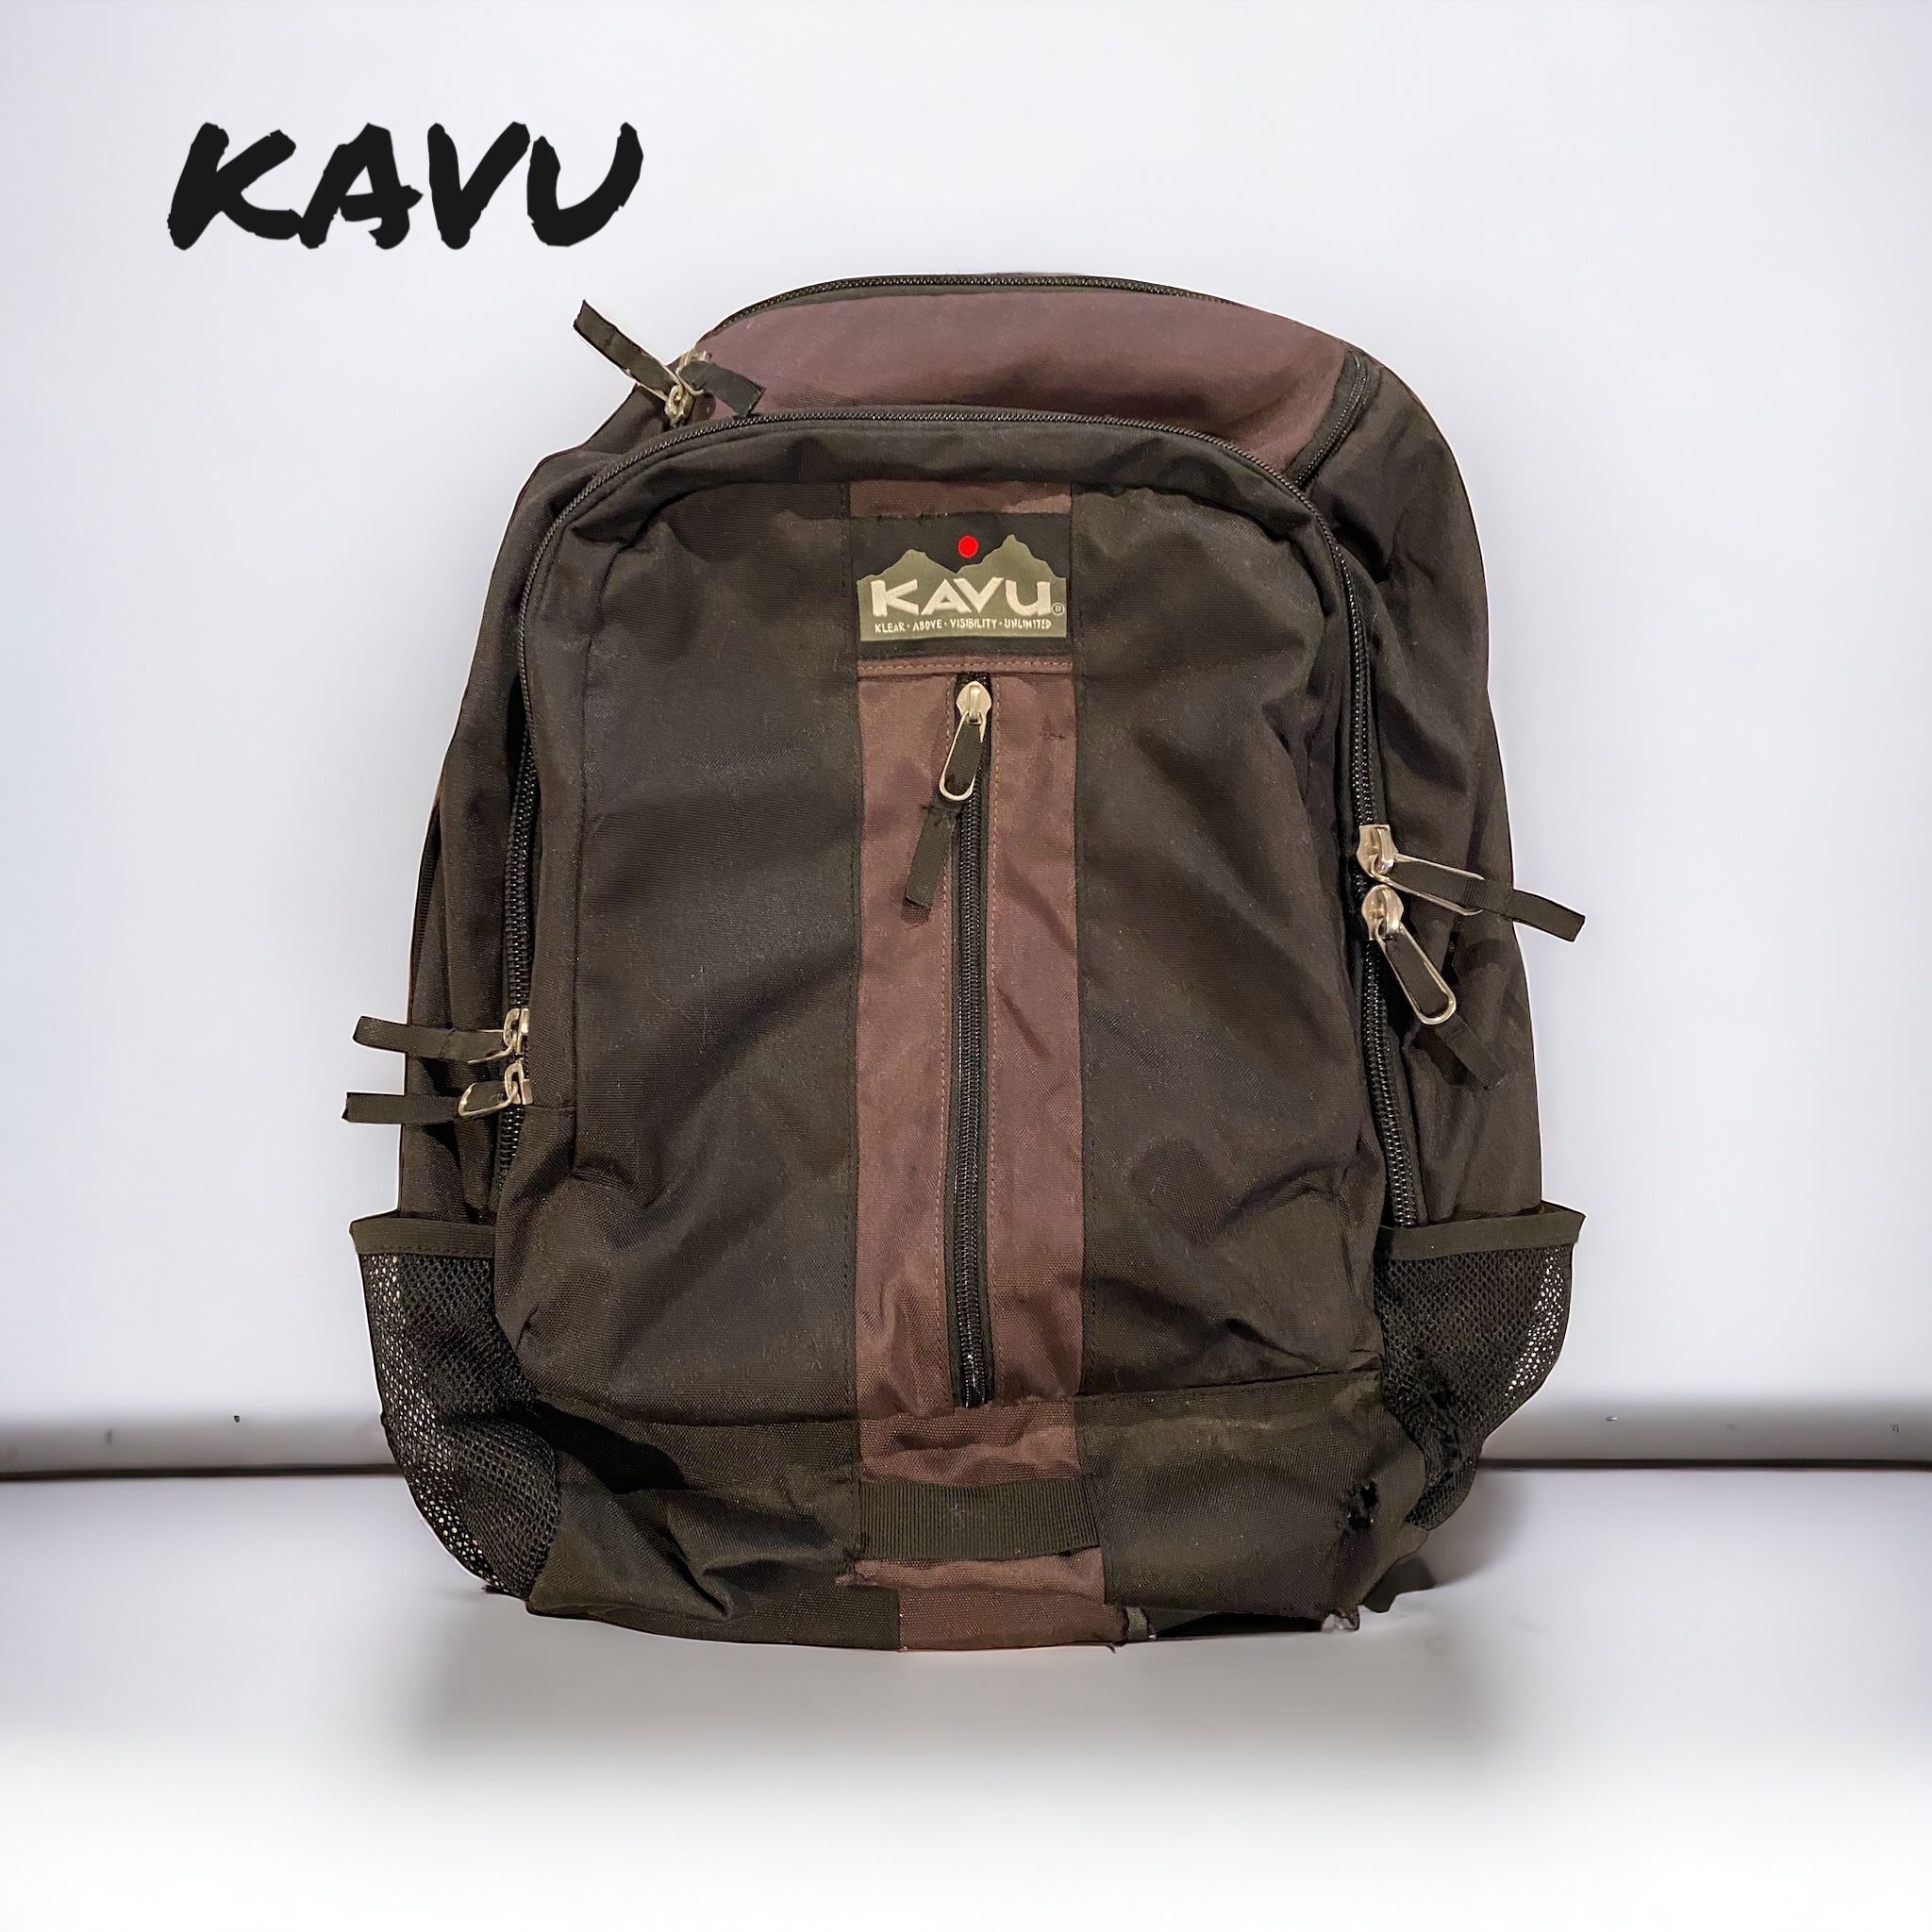 Kavu Backpack 